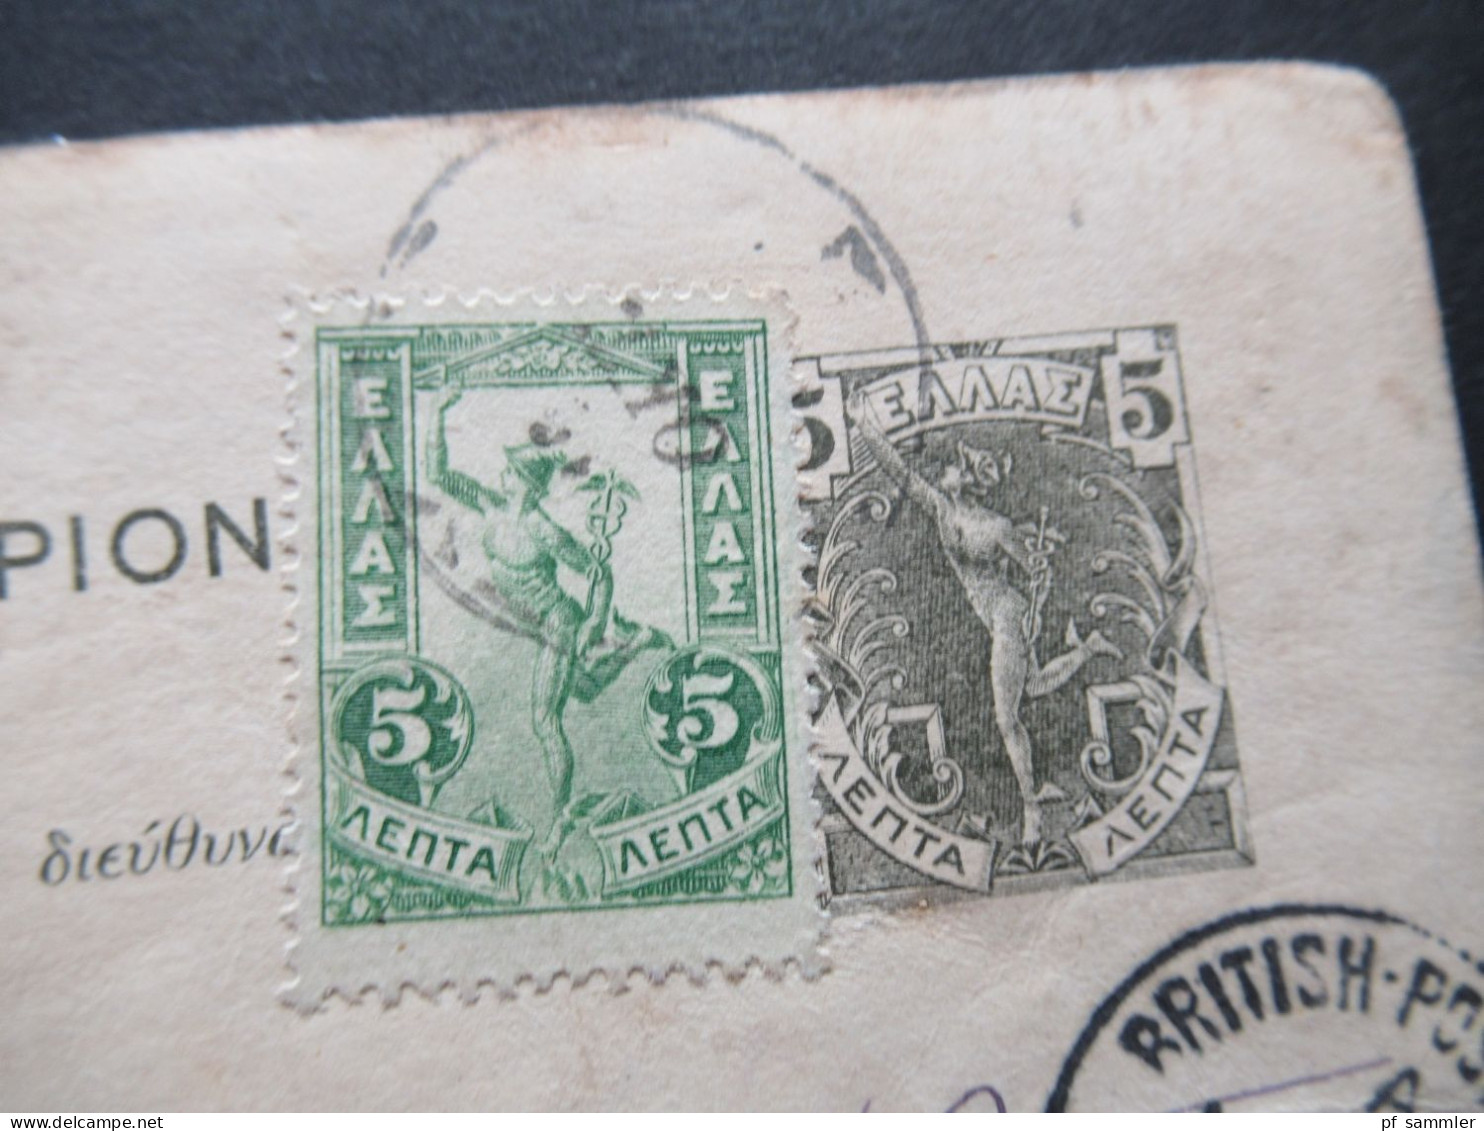 Griechenland 1905 Ganzsache Mit ZuF Nach Constantinople Mit Ank. K1 British Post Office Constantinople No 4 - Entiers Postaux